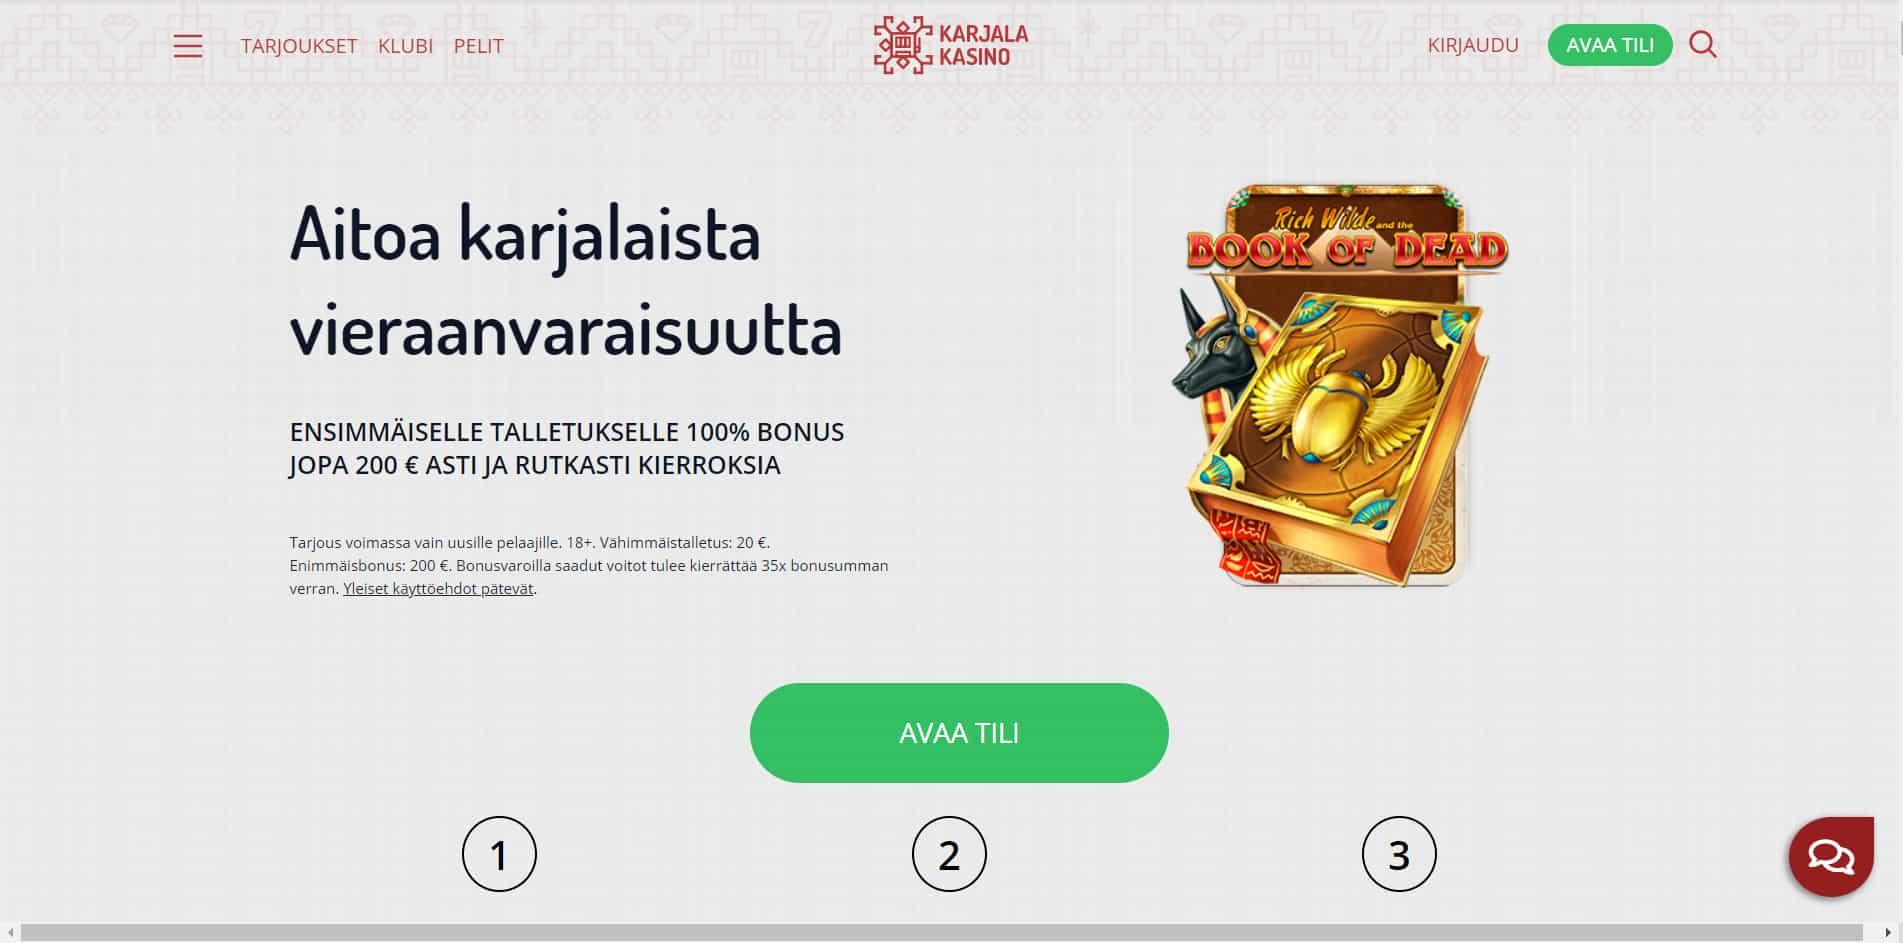 Karjala Kasino casino homepage